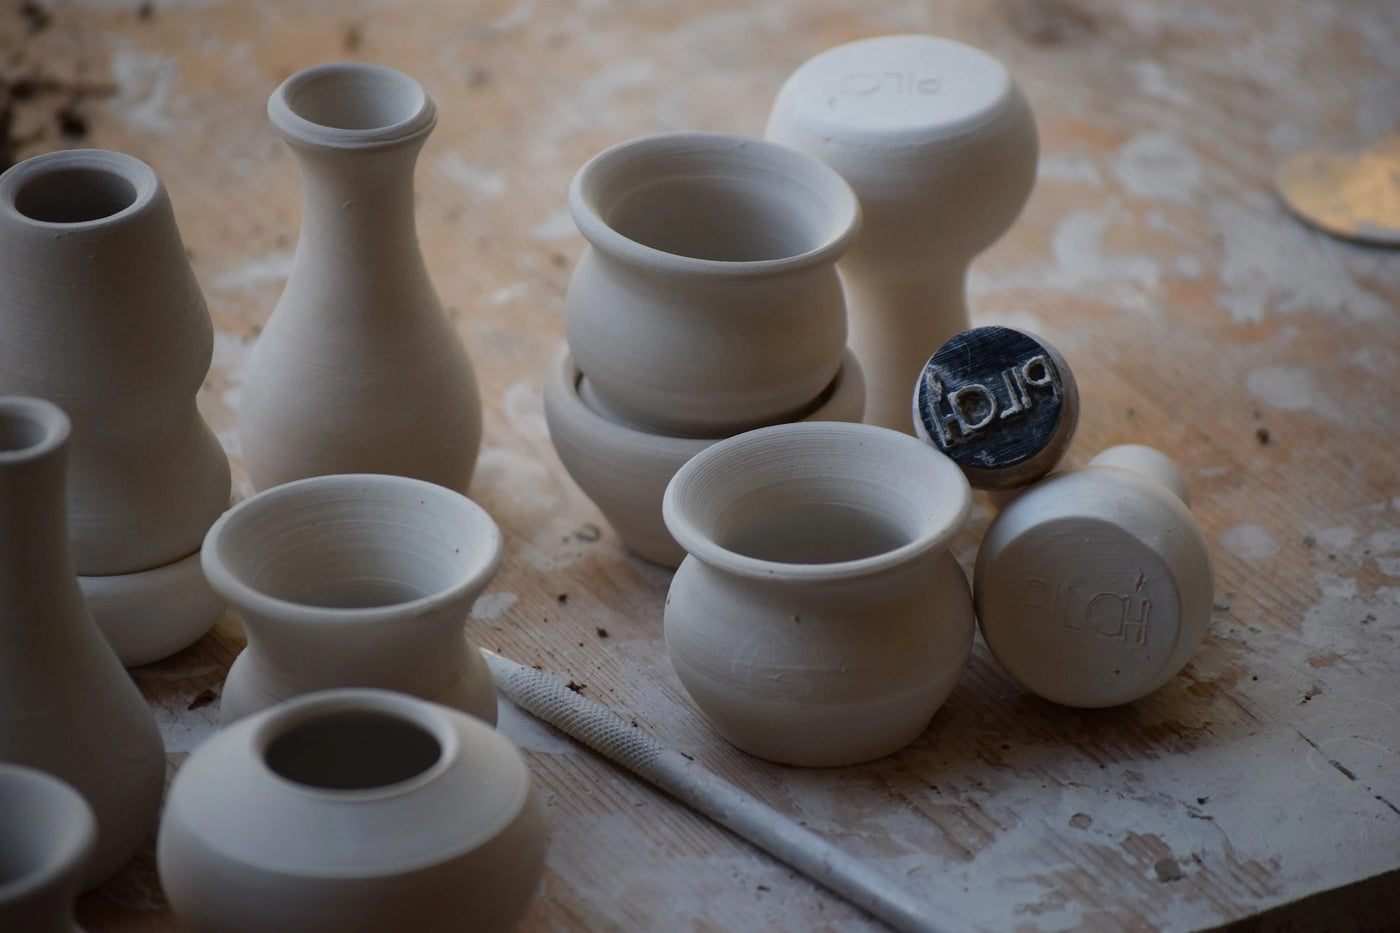 Assorted Tiny Ceramics